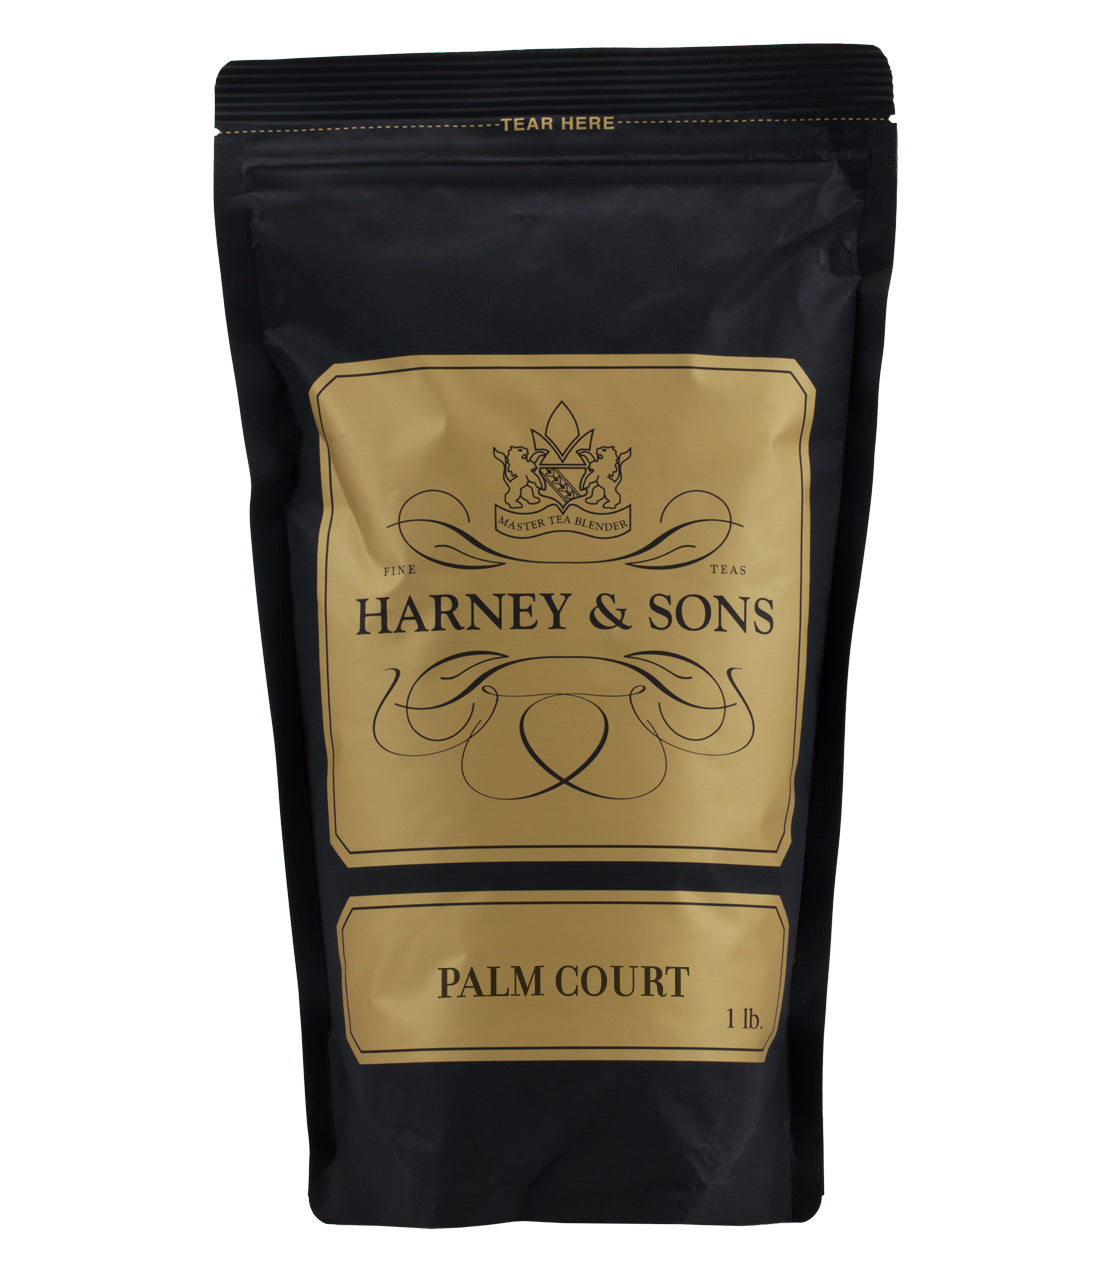 Palm Court - Loose 1 lb. Bag - Harney & Sons Fine Teas